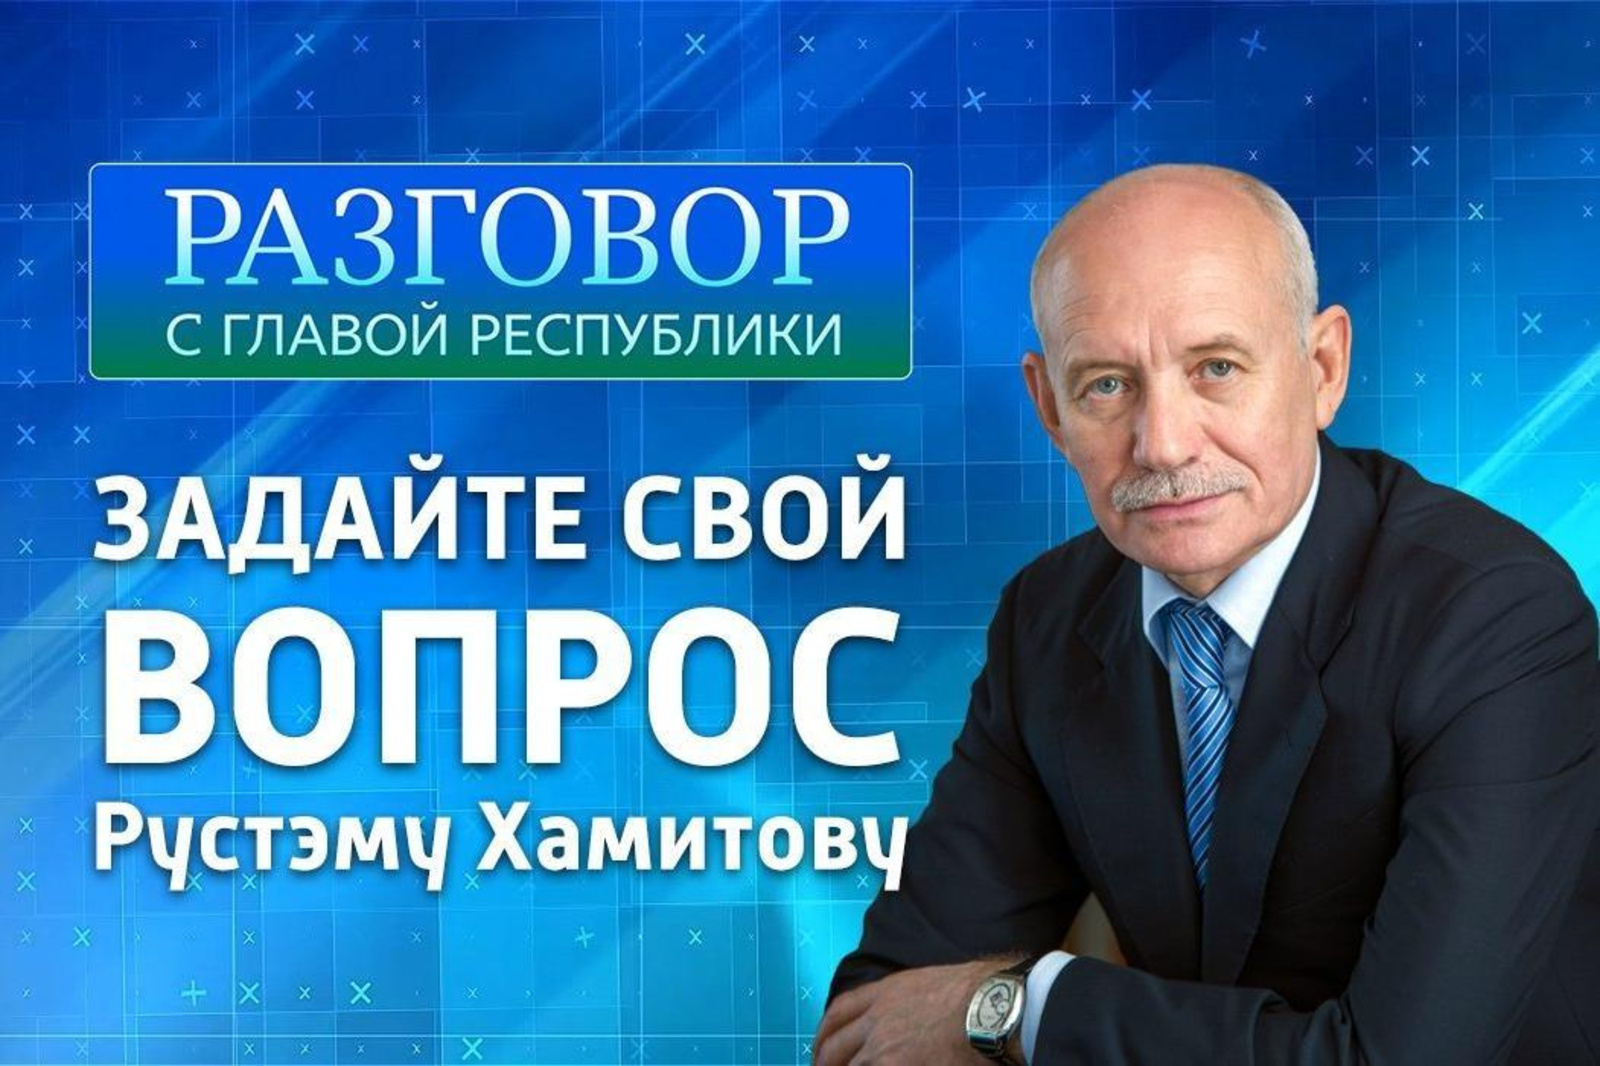 «Башҡортостан» дәүләт телерадиокомпанияһы